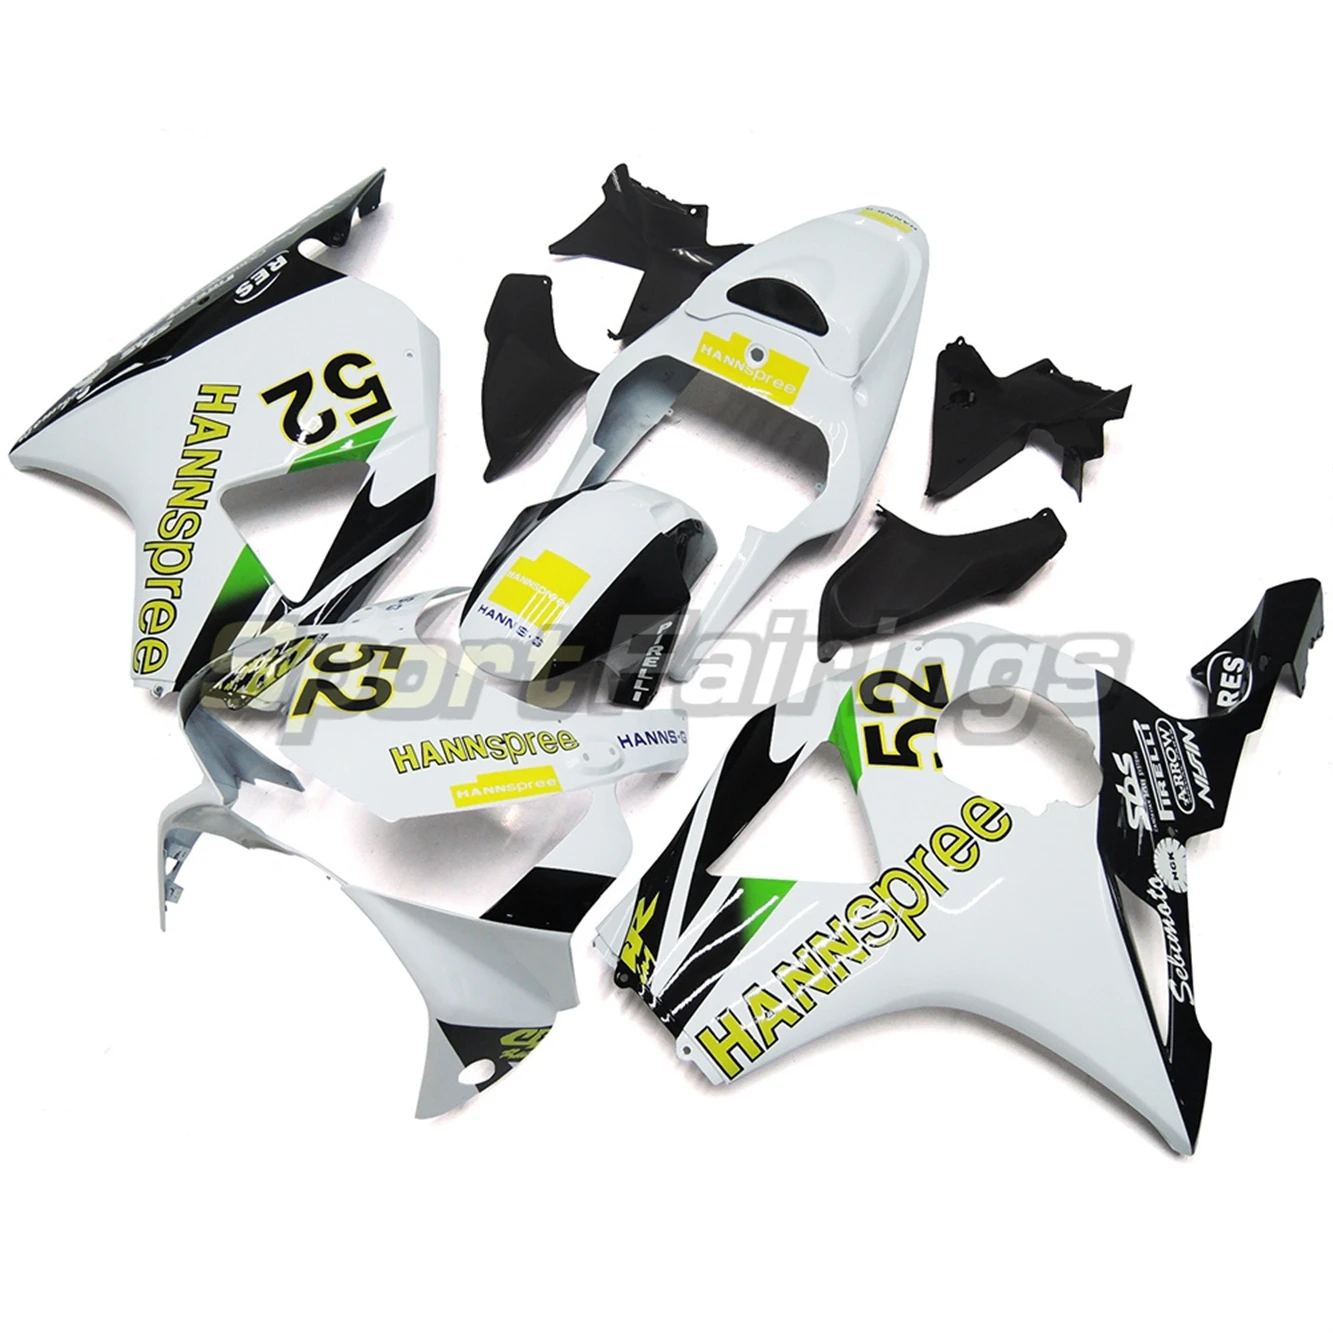 

Novos ABS Whole Motorcycle Fairings Kits Para HONDA CBR954 RR CBR954RR CBR900RR CBR900 RR 2002-2003 Injection Bodywork Acessório